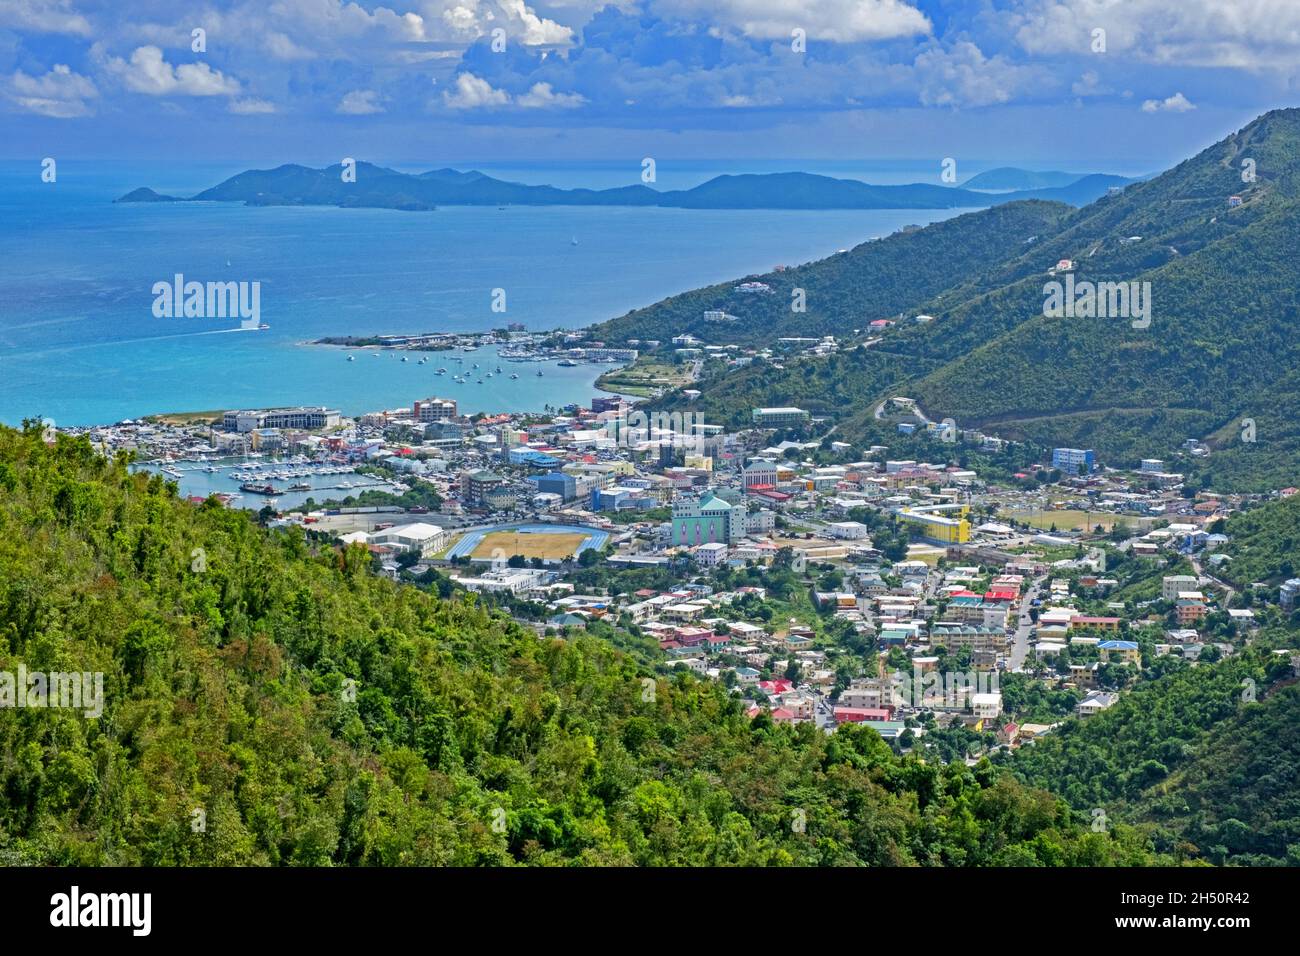 Vista sobre la ciudad capital Road Town y el puerto en forma de herradura en la isla Tortola, Islas Vírgenes Británicas, Antillas Menores, Mar Caribe Foto de stock